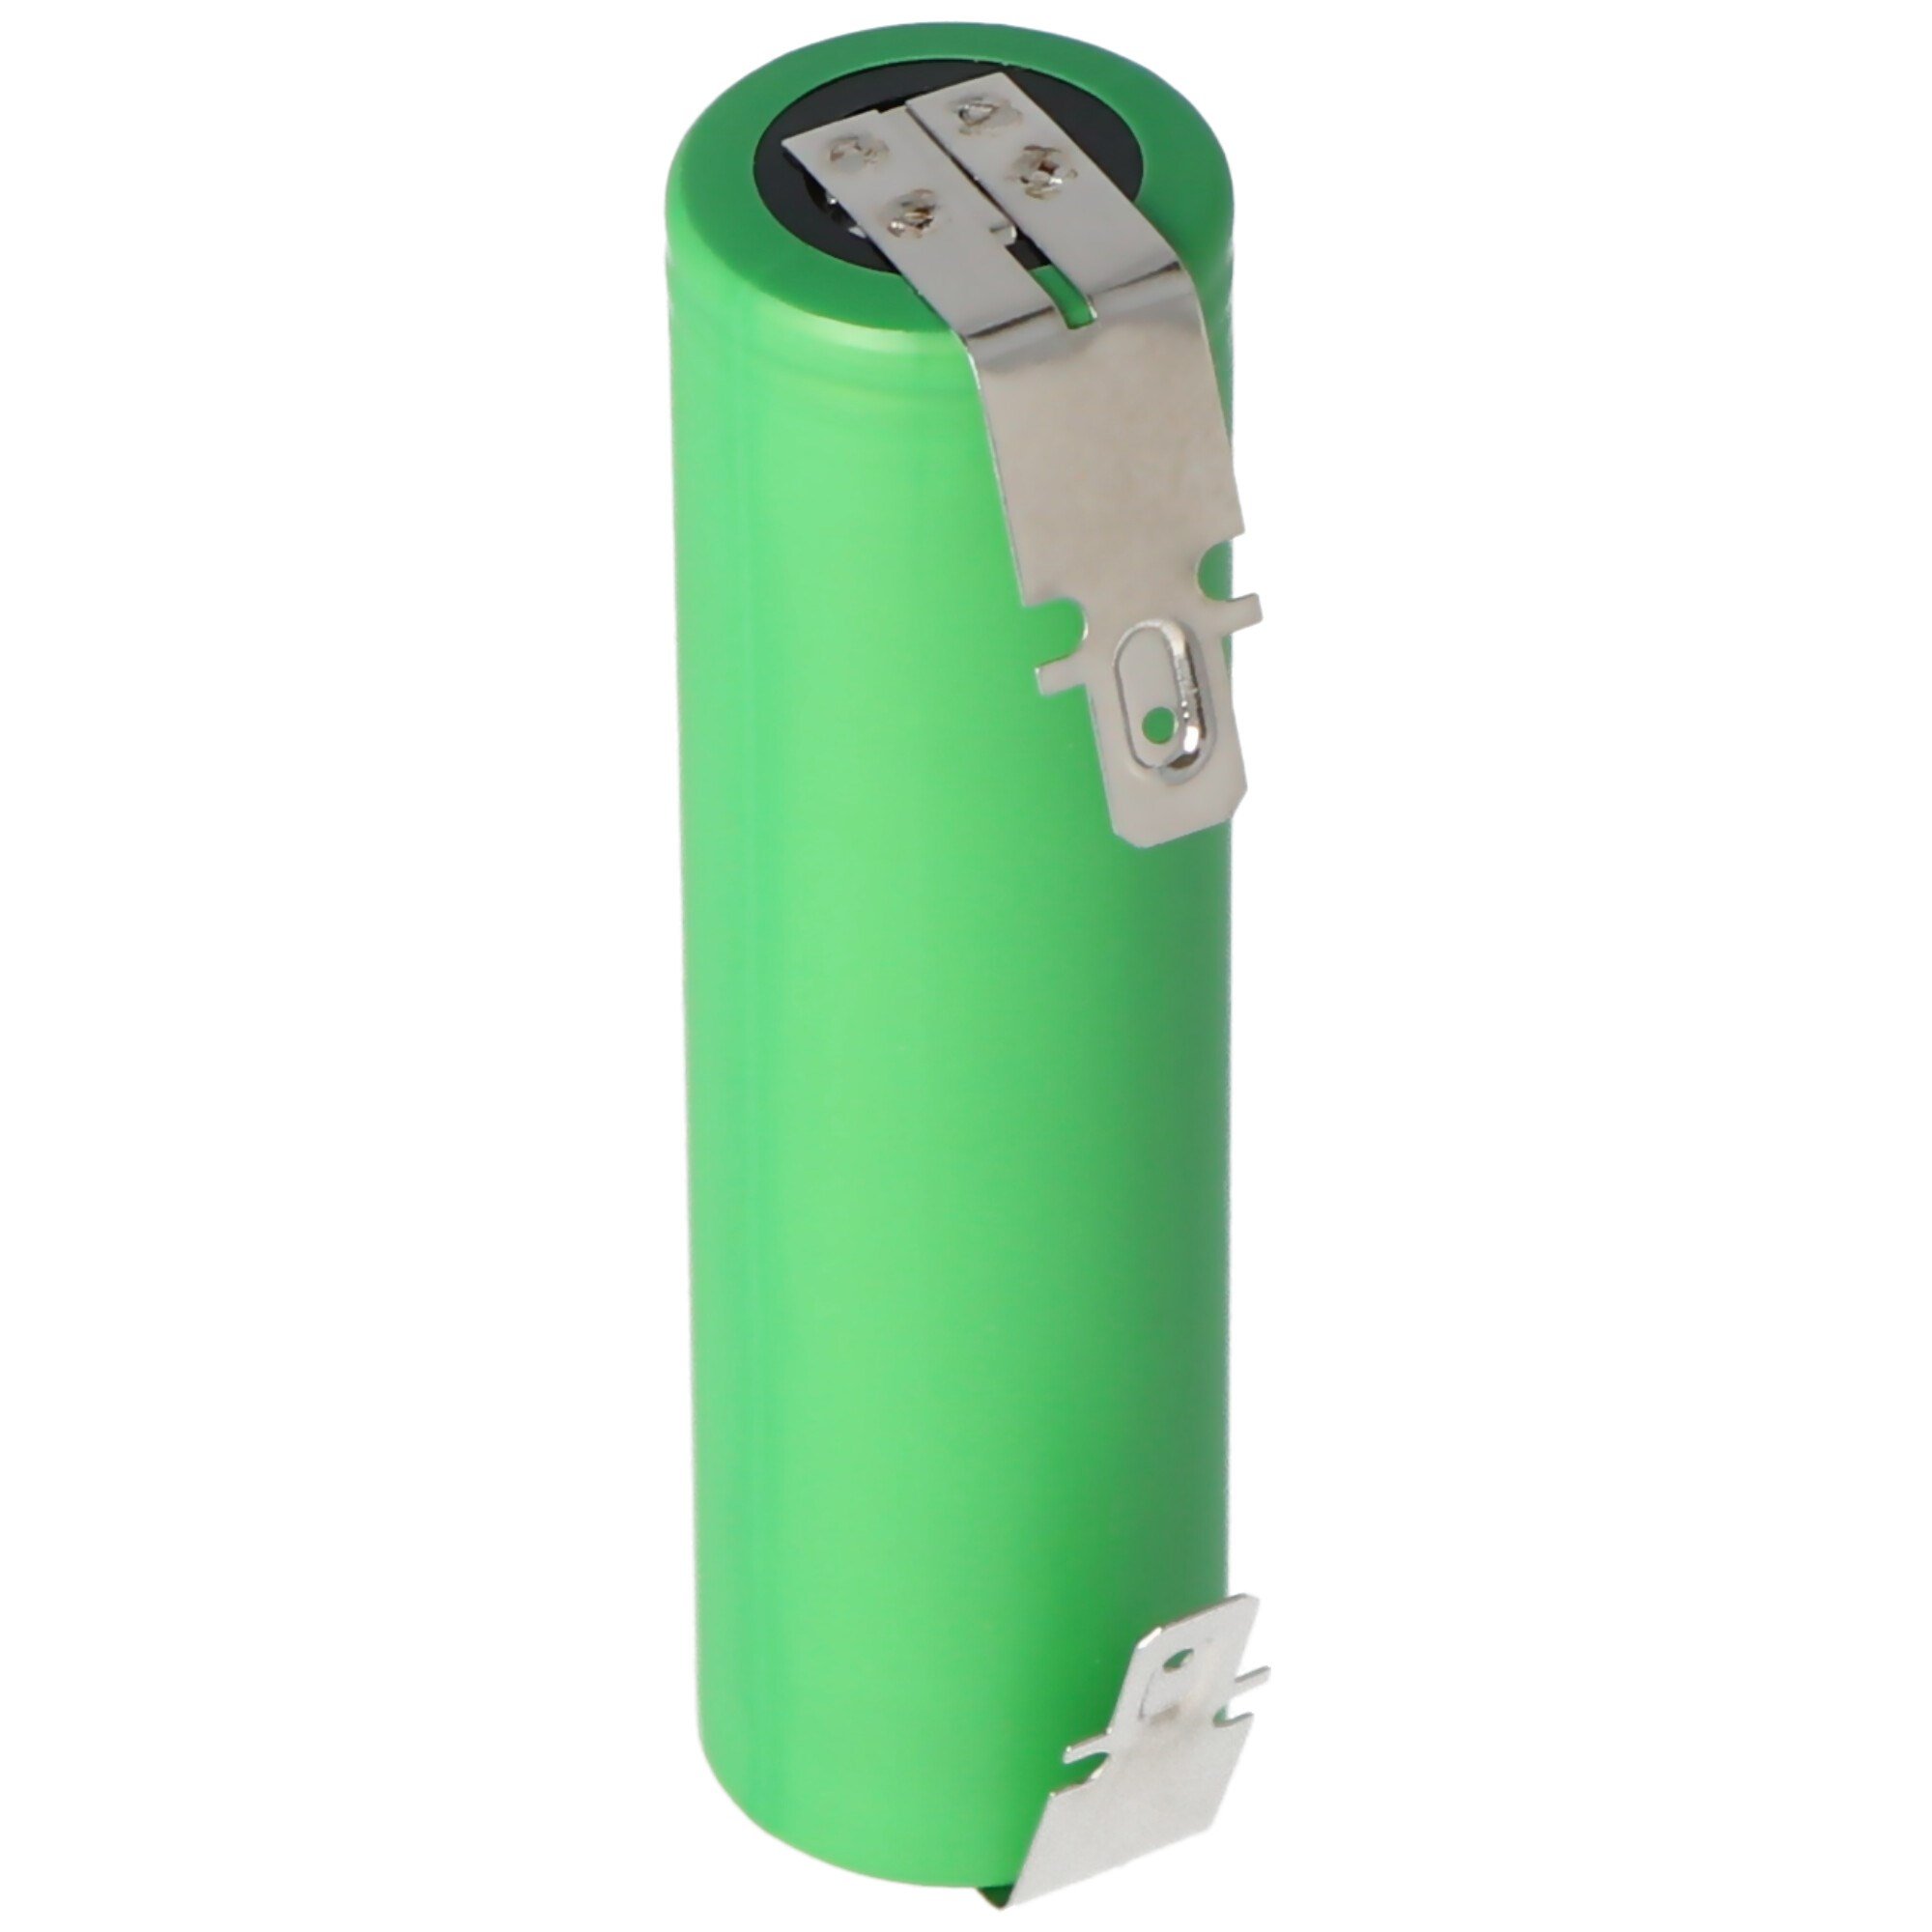 Bosch Ciso batarya için uygun çoğaltma bataryası 3,6 ila 3,7 volt  kapasiteli maks. 2200mAh